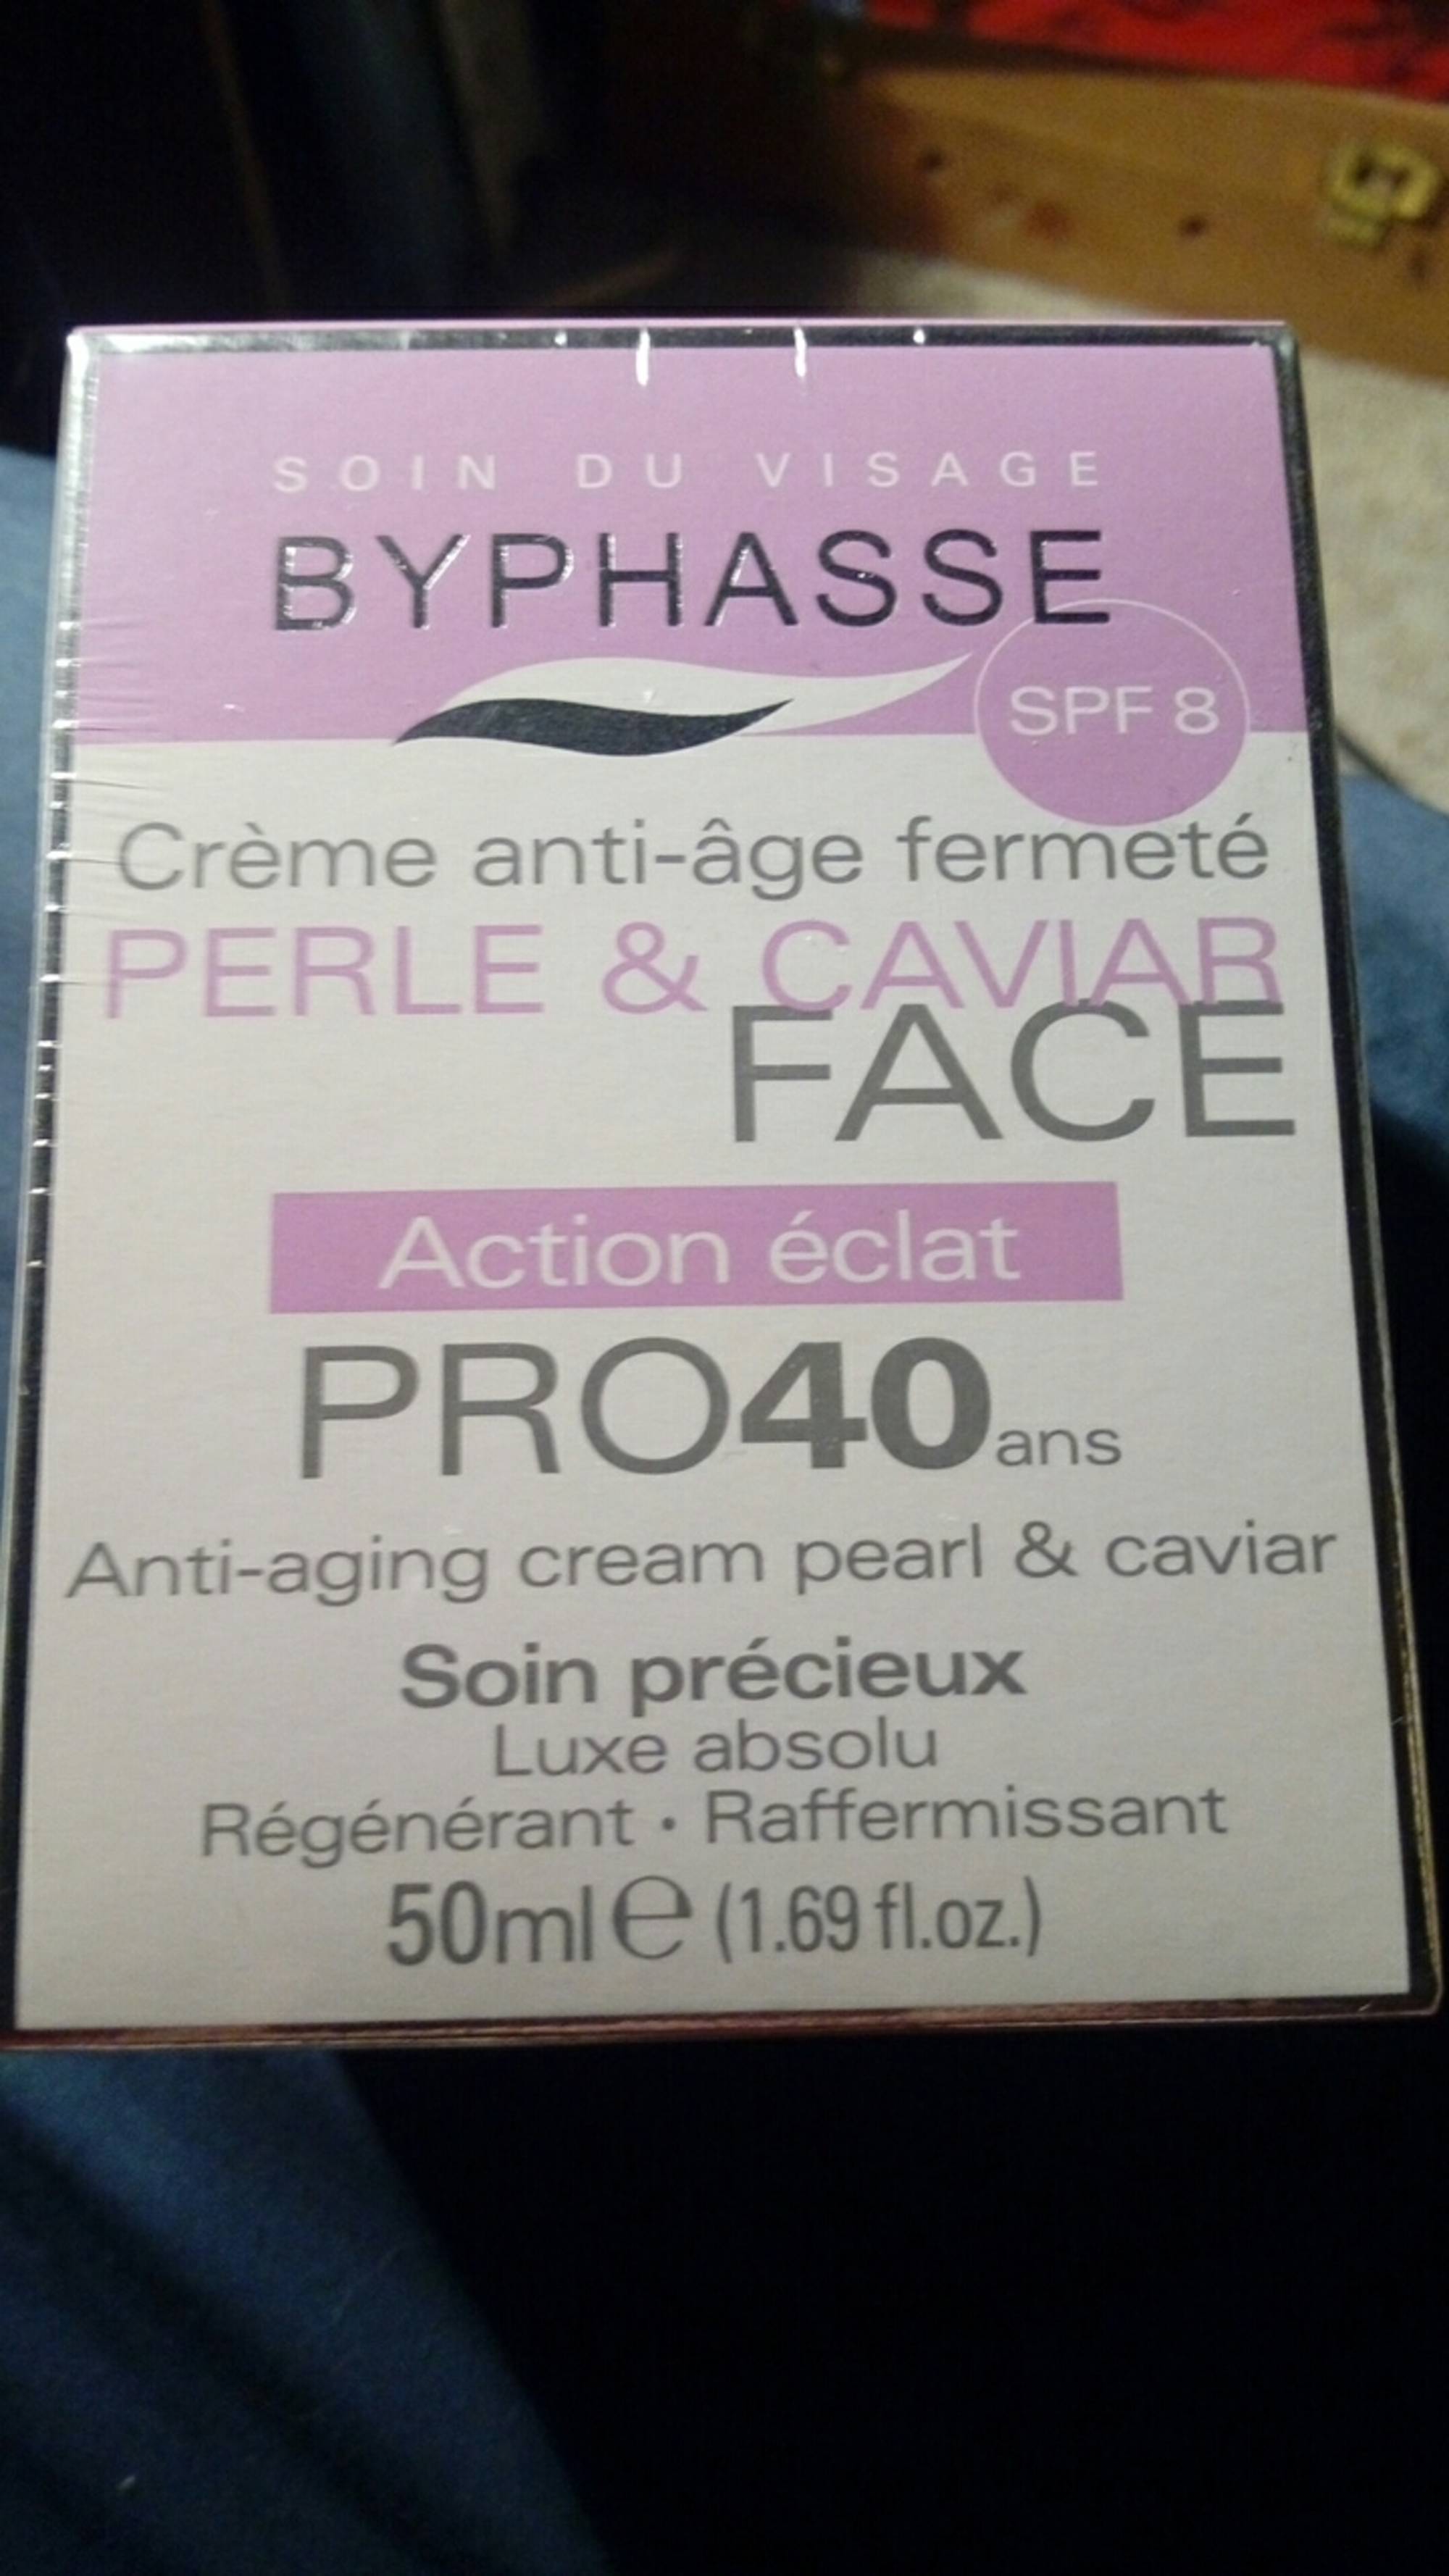 BYPHASSE - Soin du visage - Crème anti-âge fermeté spf8